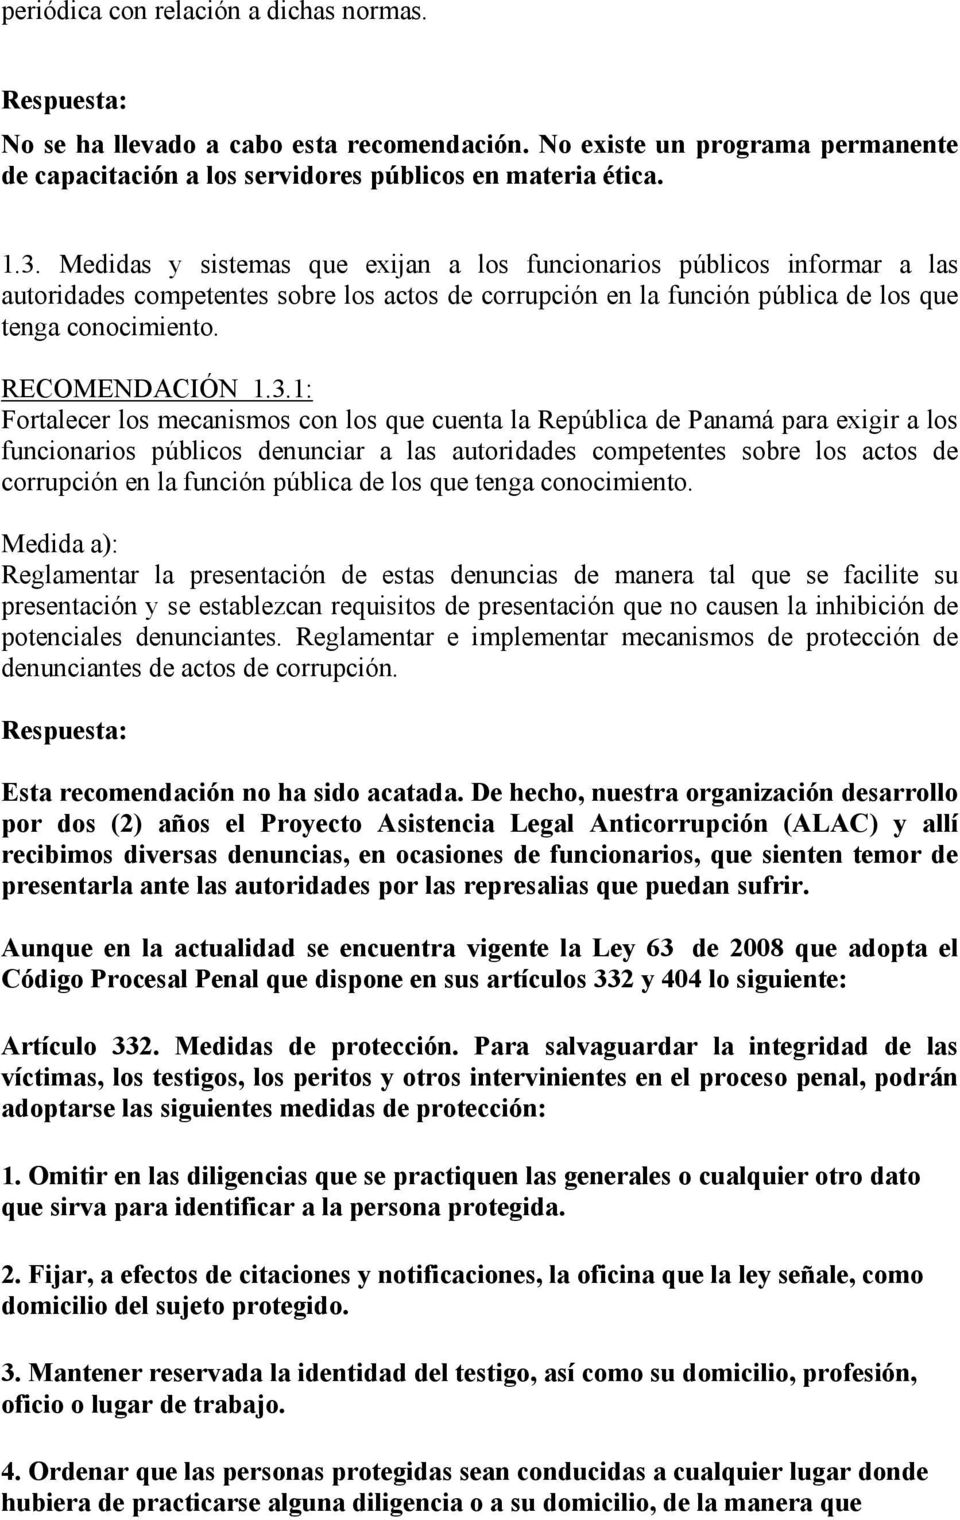 1: Fortalecer los mecanismos con los que cuenta la República de Panamá para exigir a los funcionarios públicos denunciar a las autoridades competentes sobre los actos de corrupción en la función